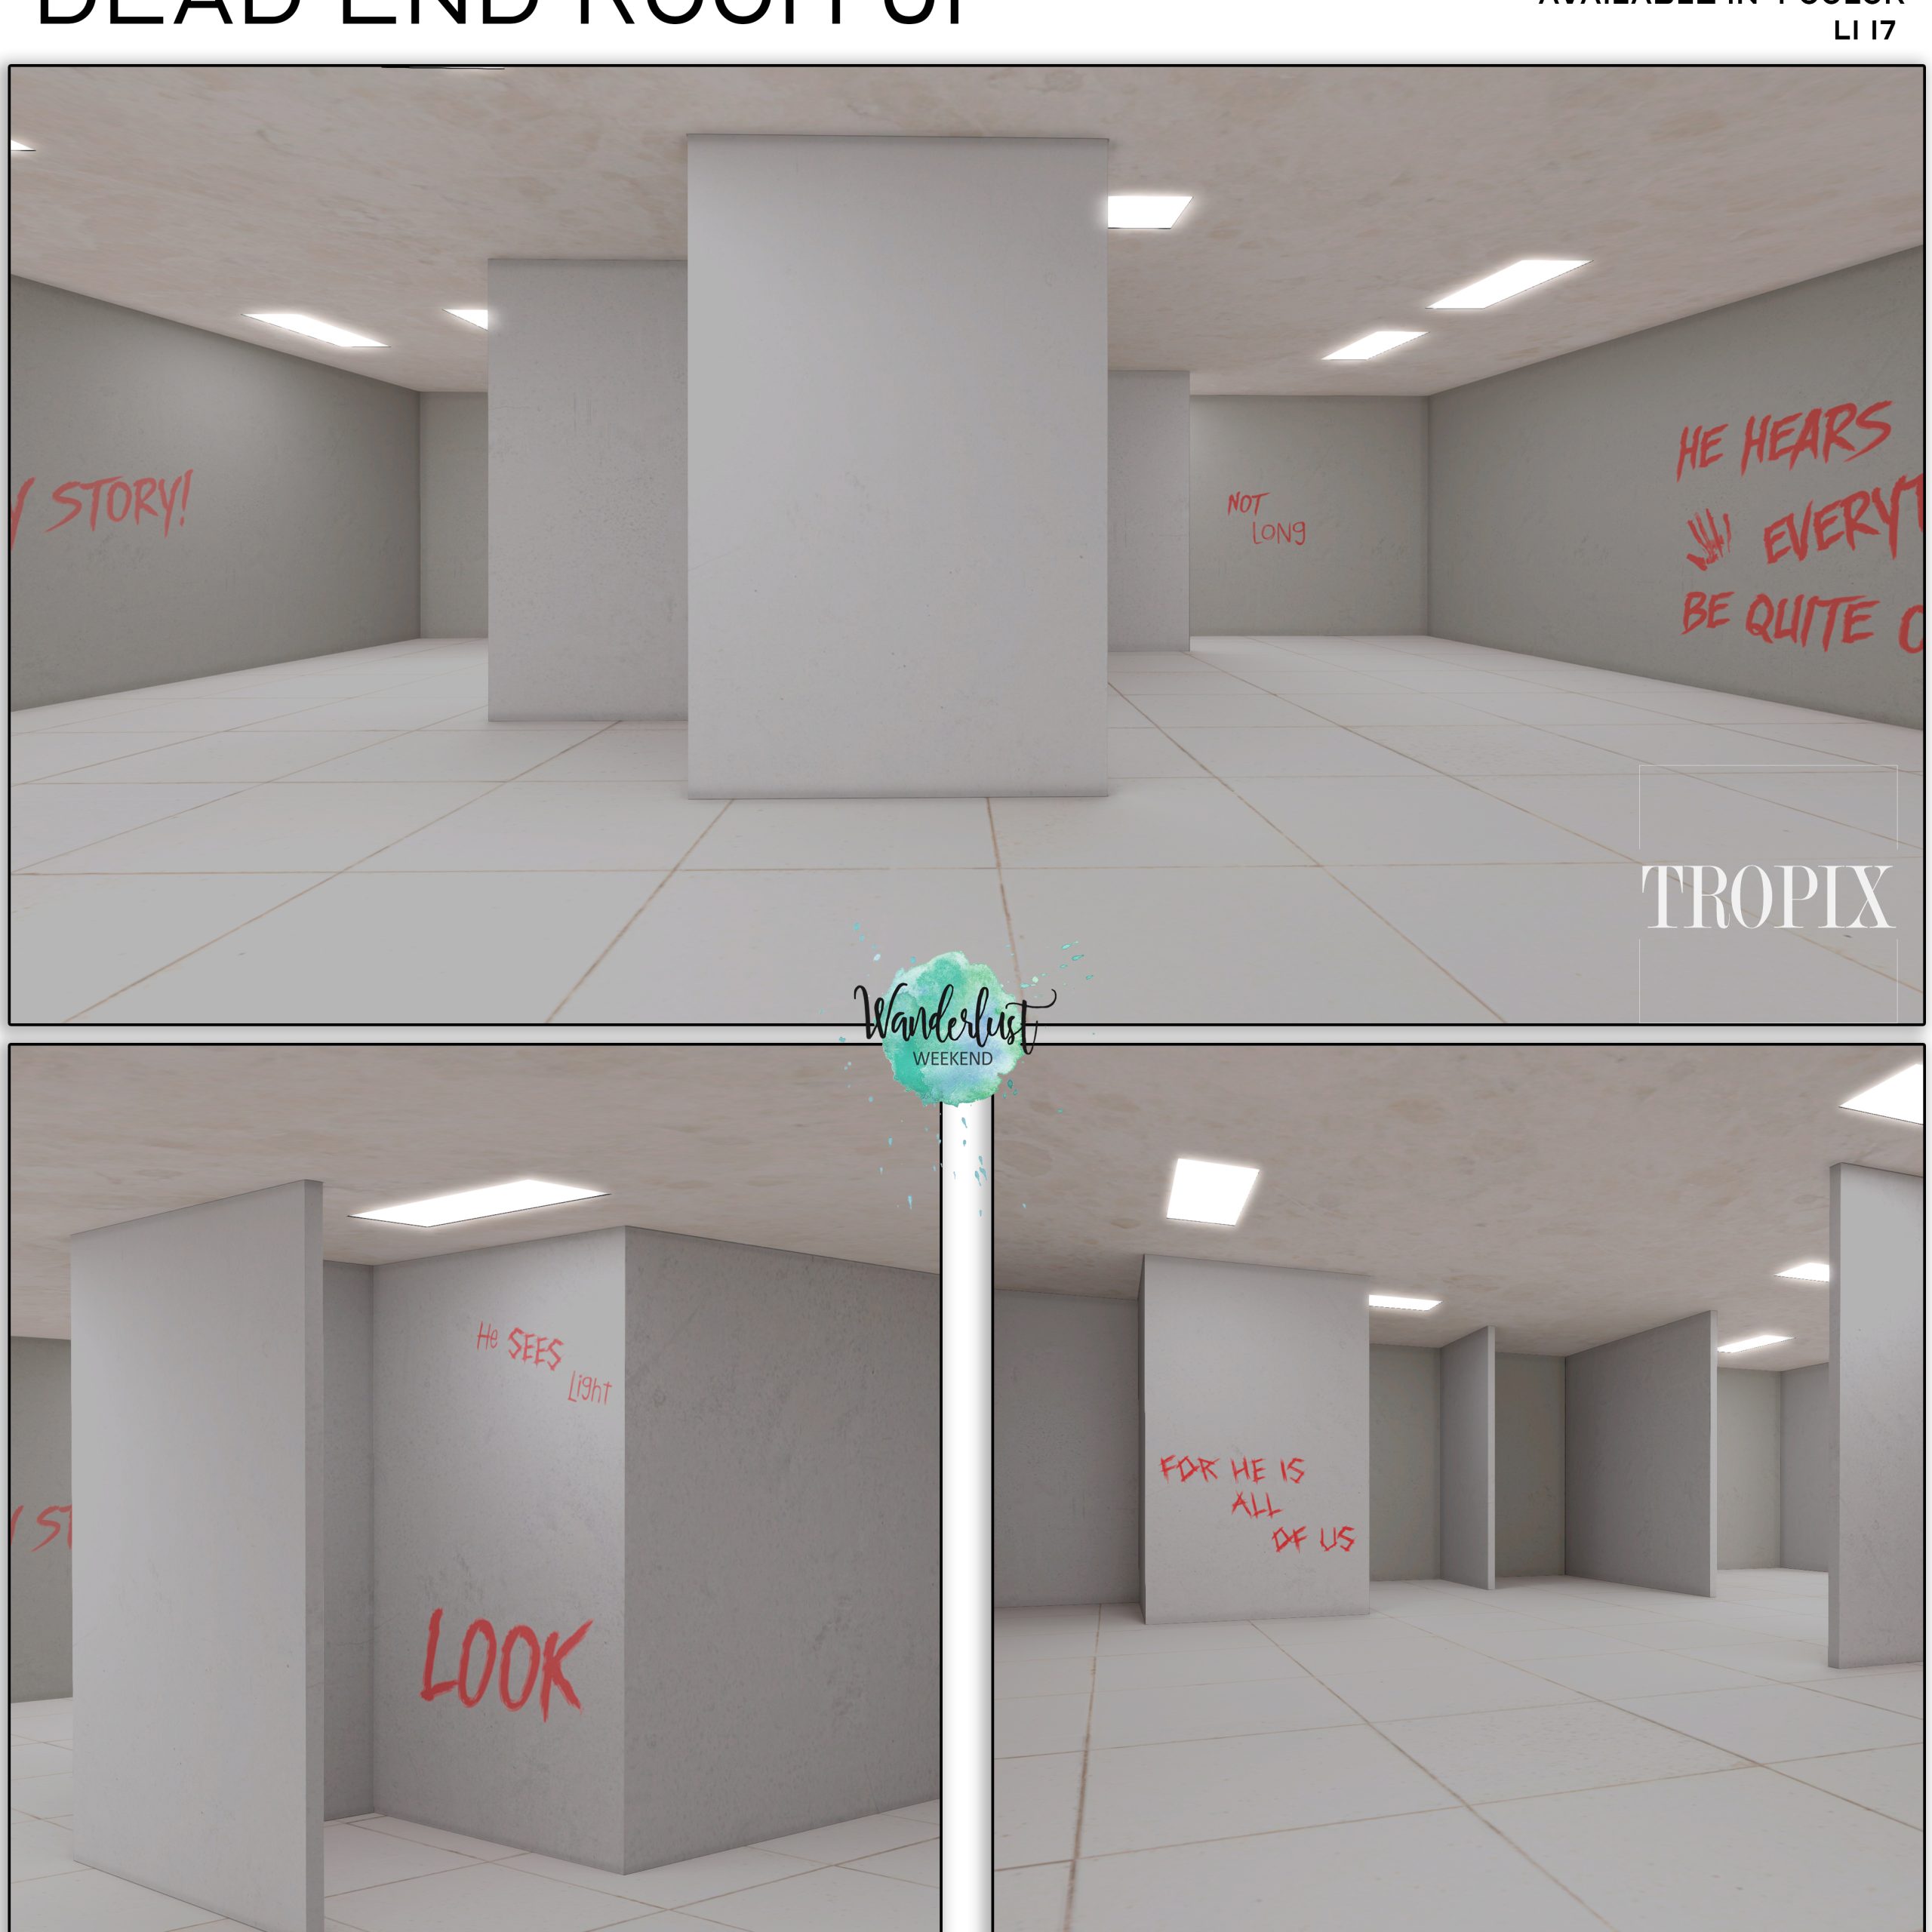 Tropix – Dead End Room